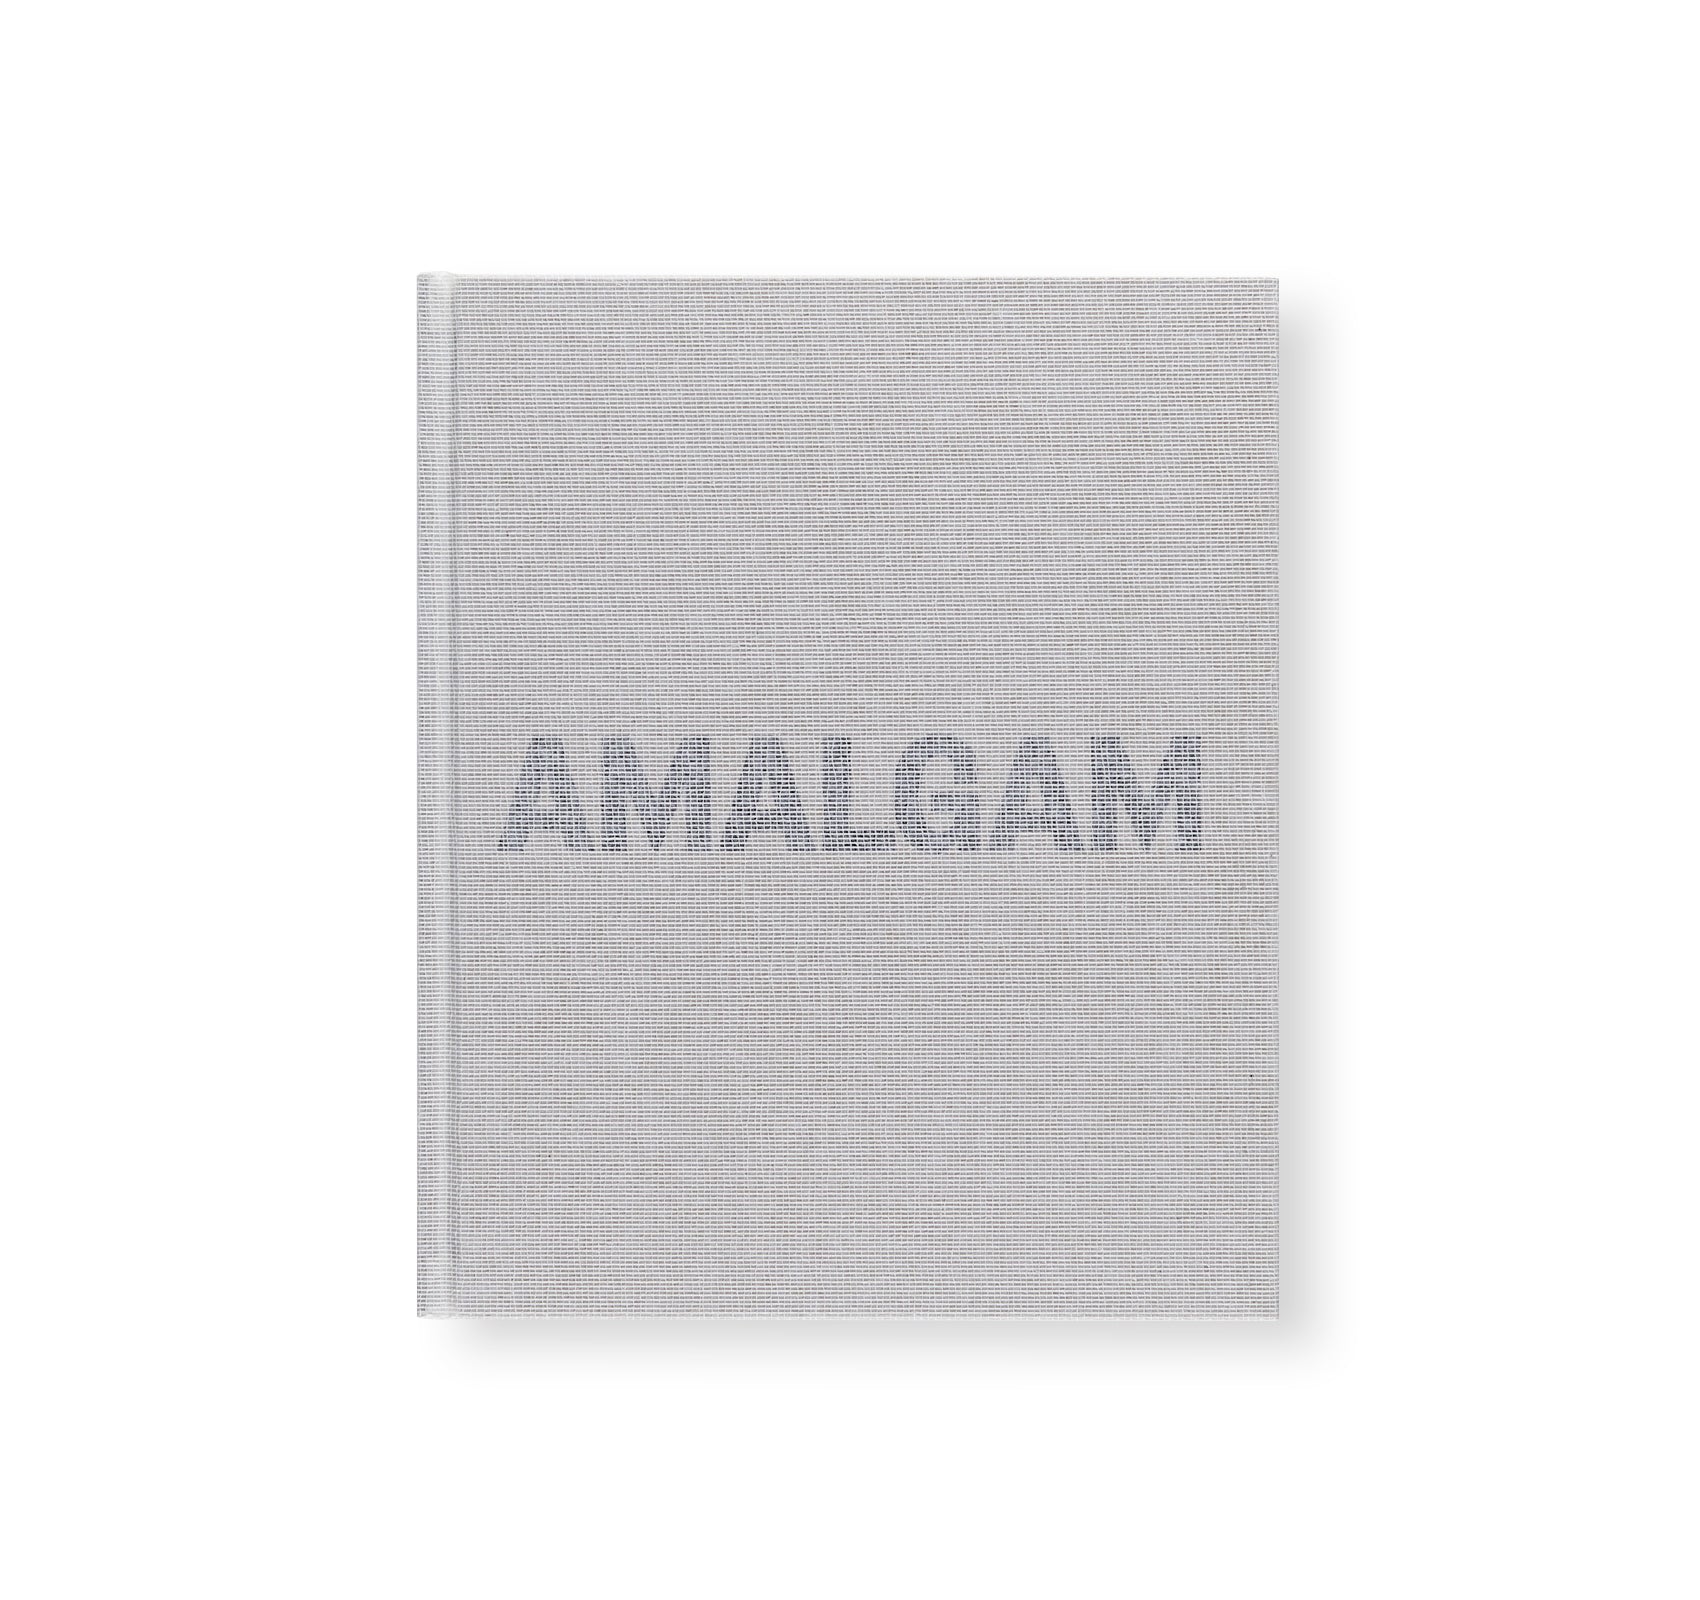 AMALGAM by Theaster Gates